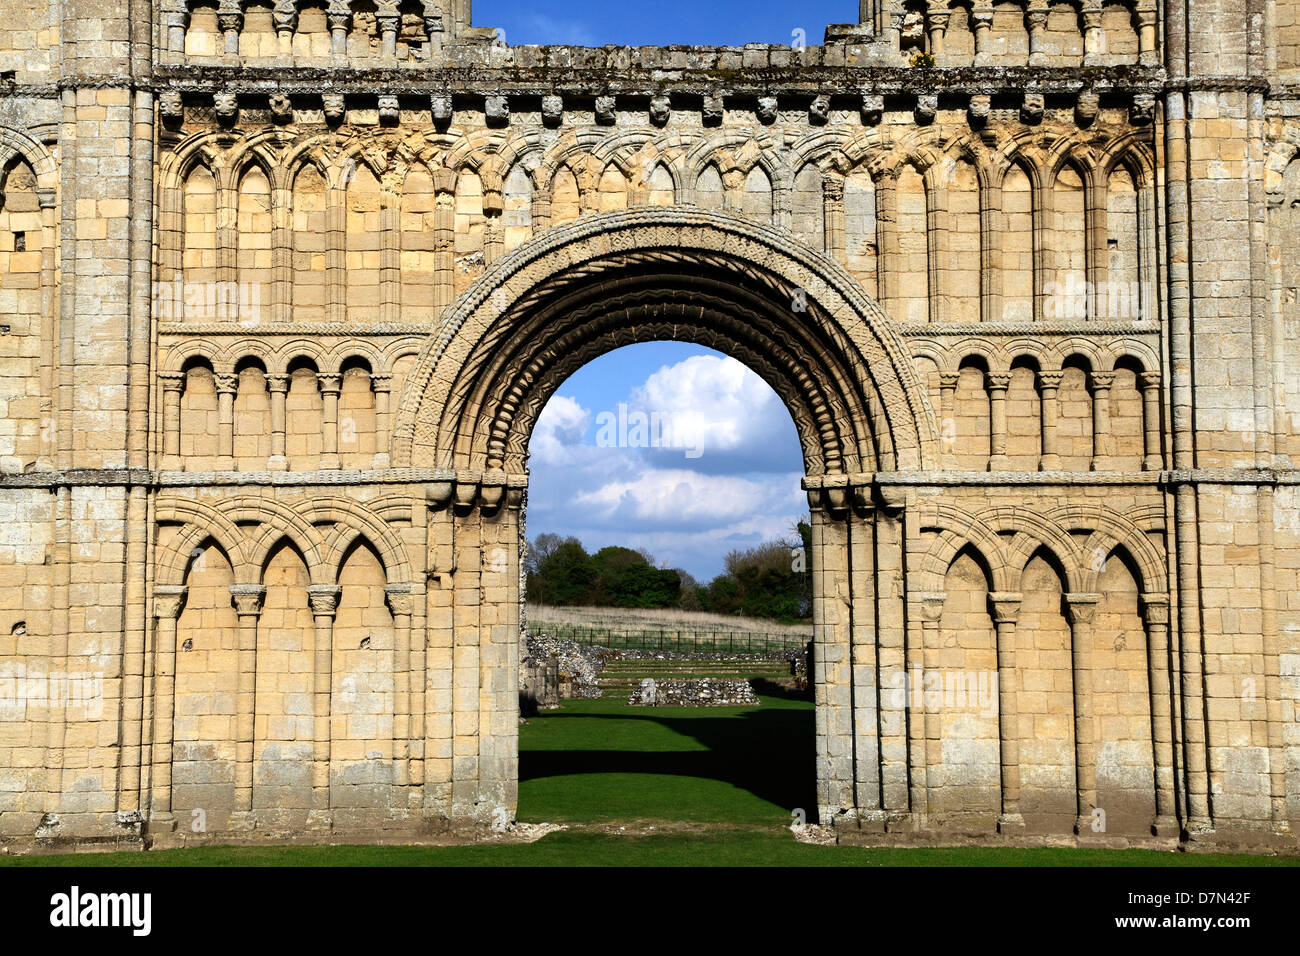 Castle Acre Prieuré, Norfolk, à l'ouest de l'église prieurale de l'avant, en Angleterre, Royaume-Uni, l'architecture romane normande, prieurés anglais, ruines Banque D'Images